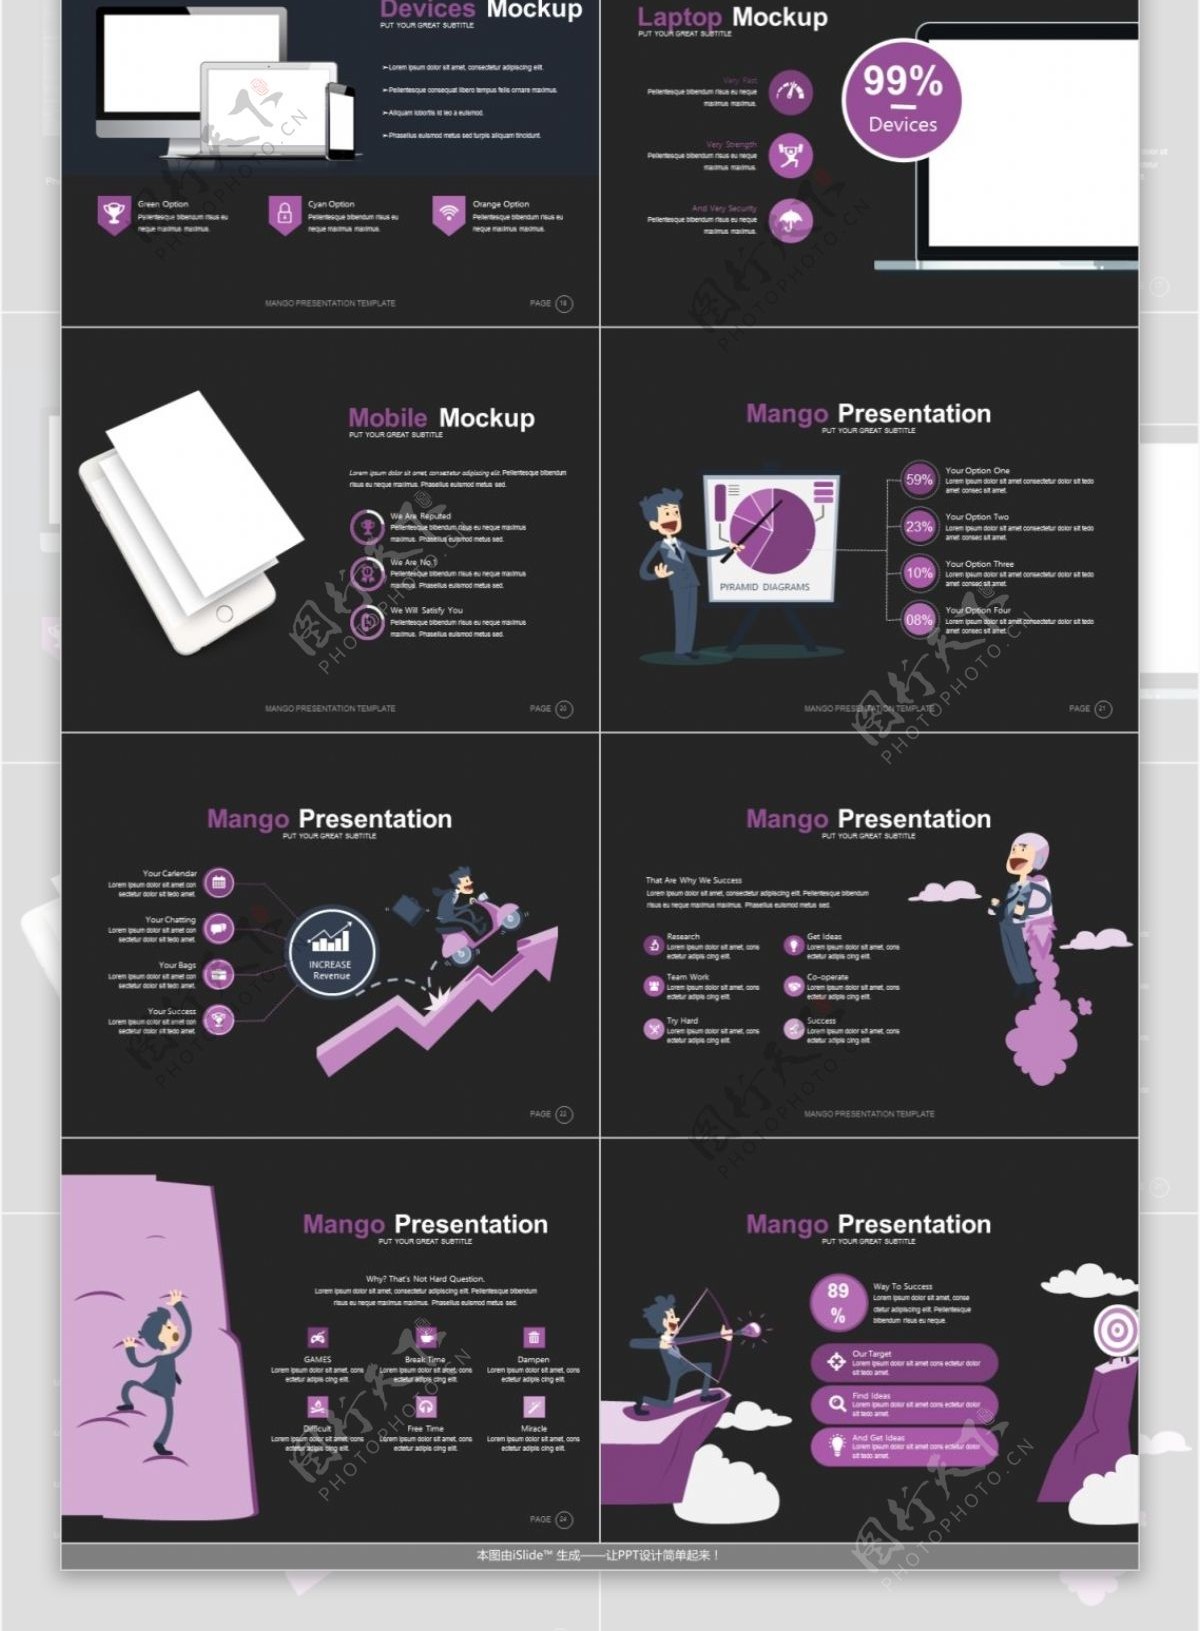 紫色大方企业宣传科技行业keynote模板